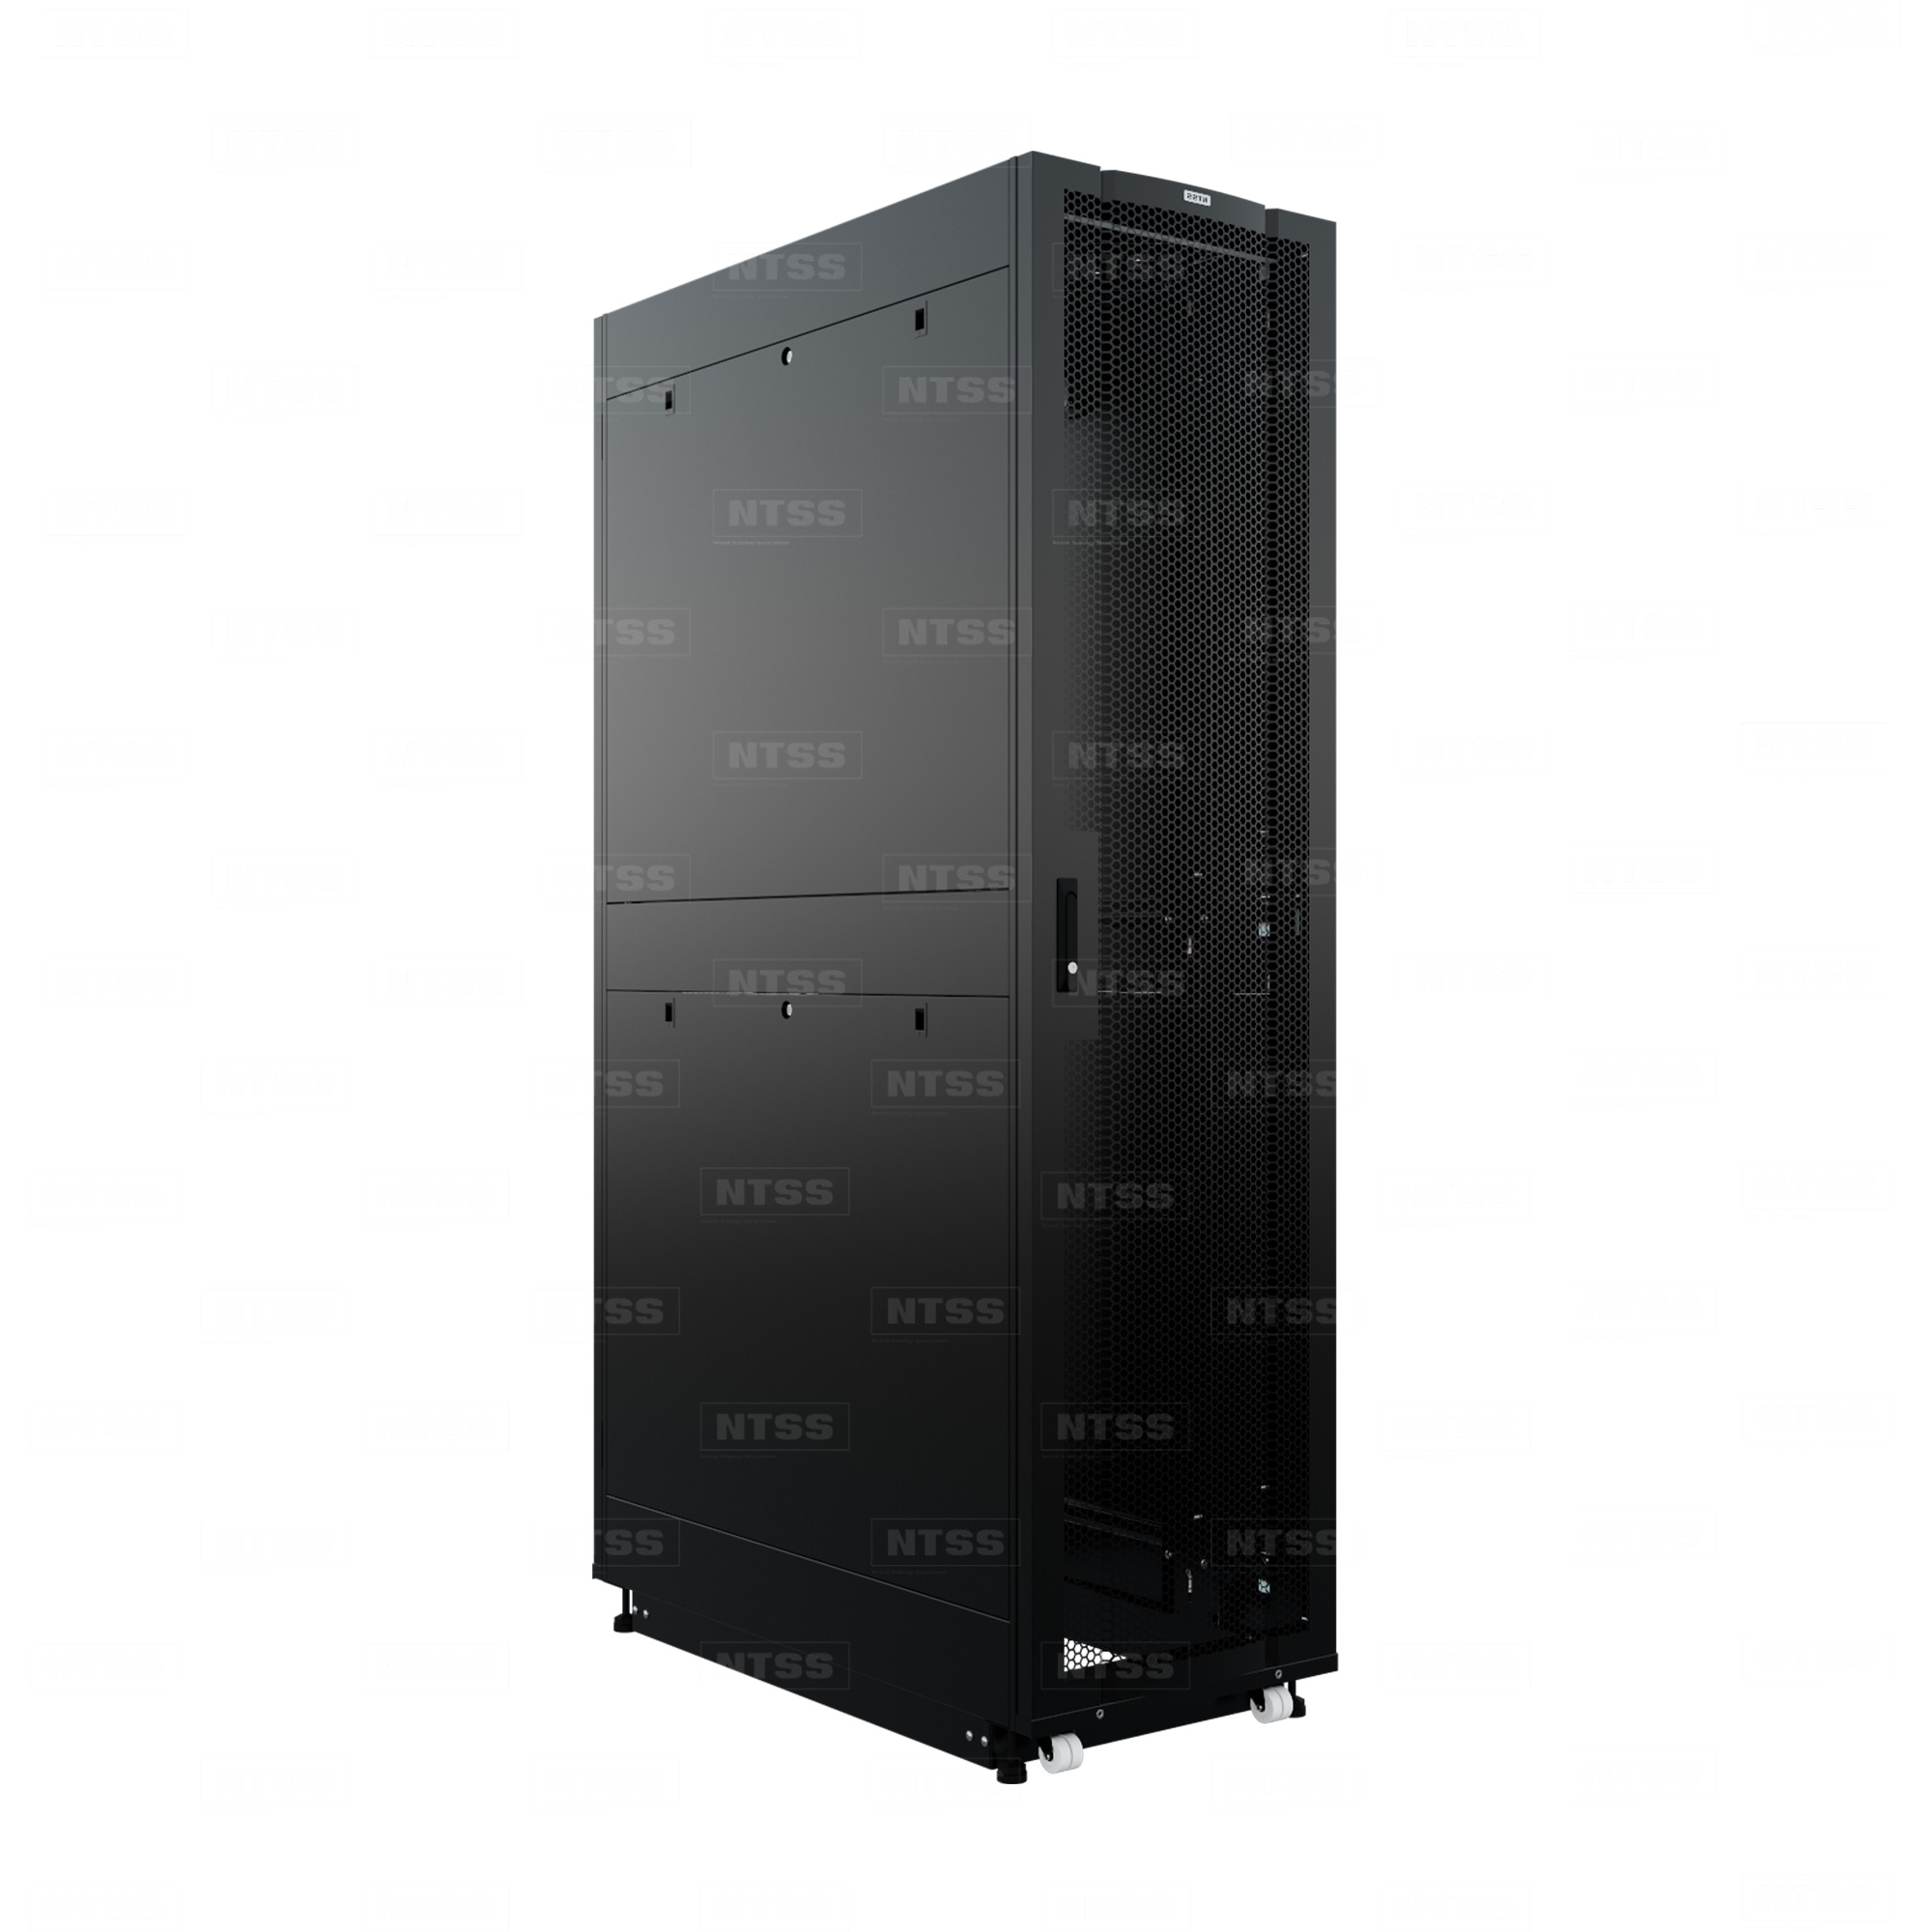 19" Напольный серверный шкаф NTSS ПРОЦОД PC 45U 600х1200 мм, передняя дверь перфорация, задняя дверь распашная двойная перфорированная, боковые стенки, регулируемые опоры, ролики, черный RAL 9005  